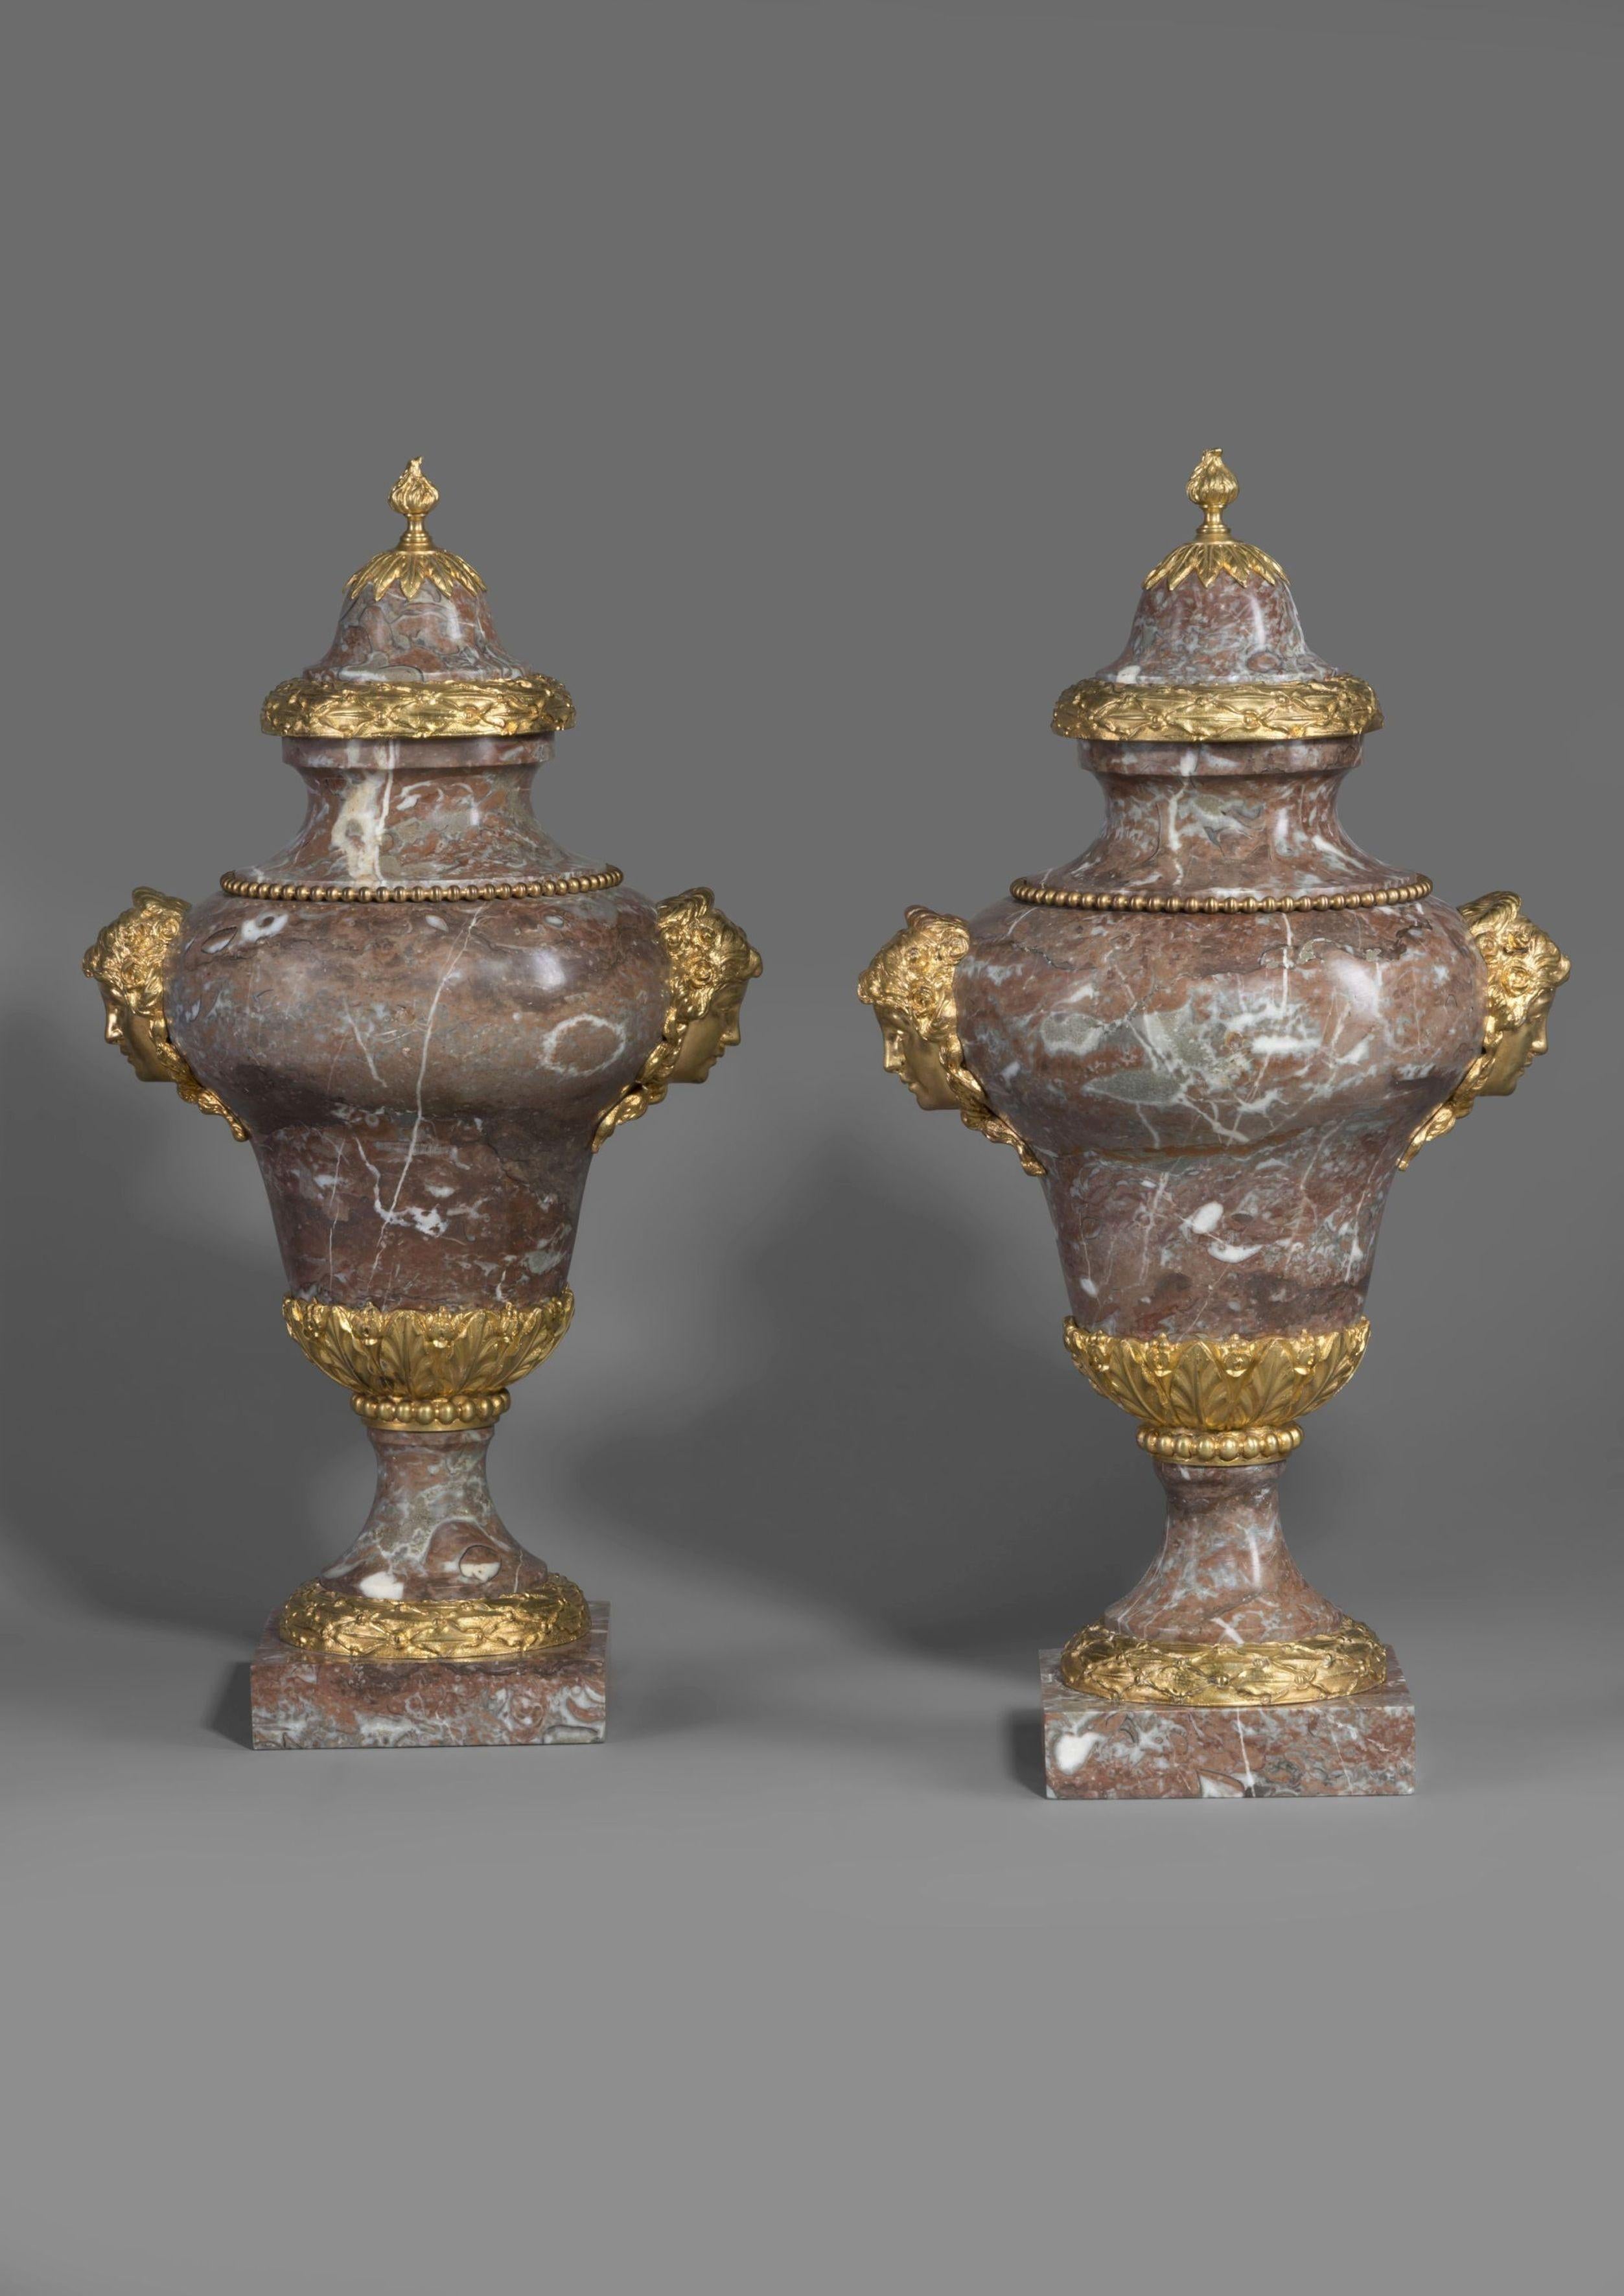 Paire de vases en marbre Incarnat Turquin montés en bronze doré, à la manière de Pierre Gouthière.

Chaque vase est orné de masques féminins et de guirlandes de feuillage en bronze doré finement coulé. 

Pierre Gouthière (1732-1813), fils d'un